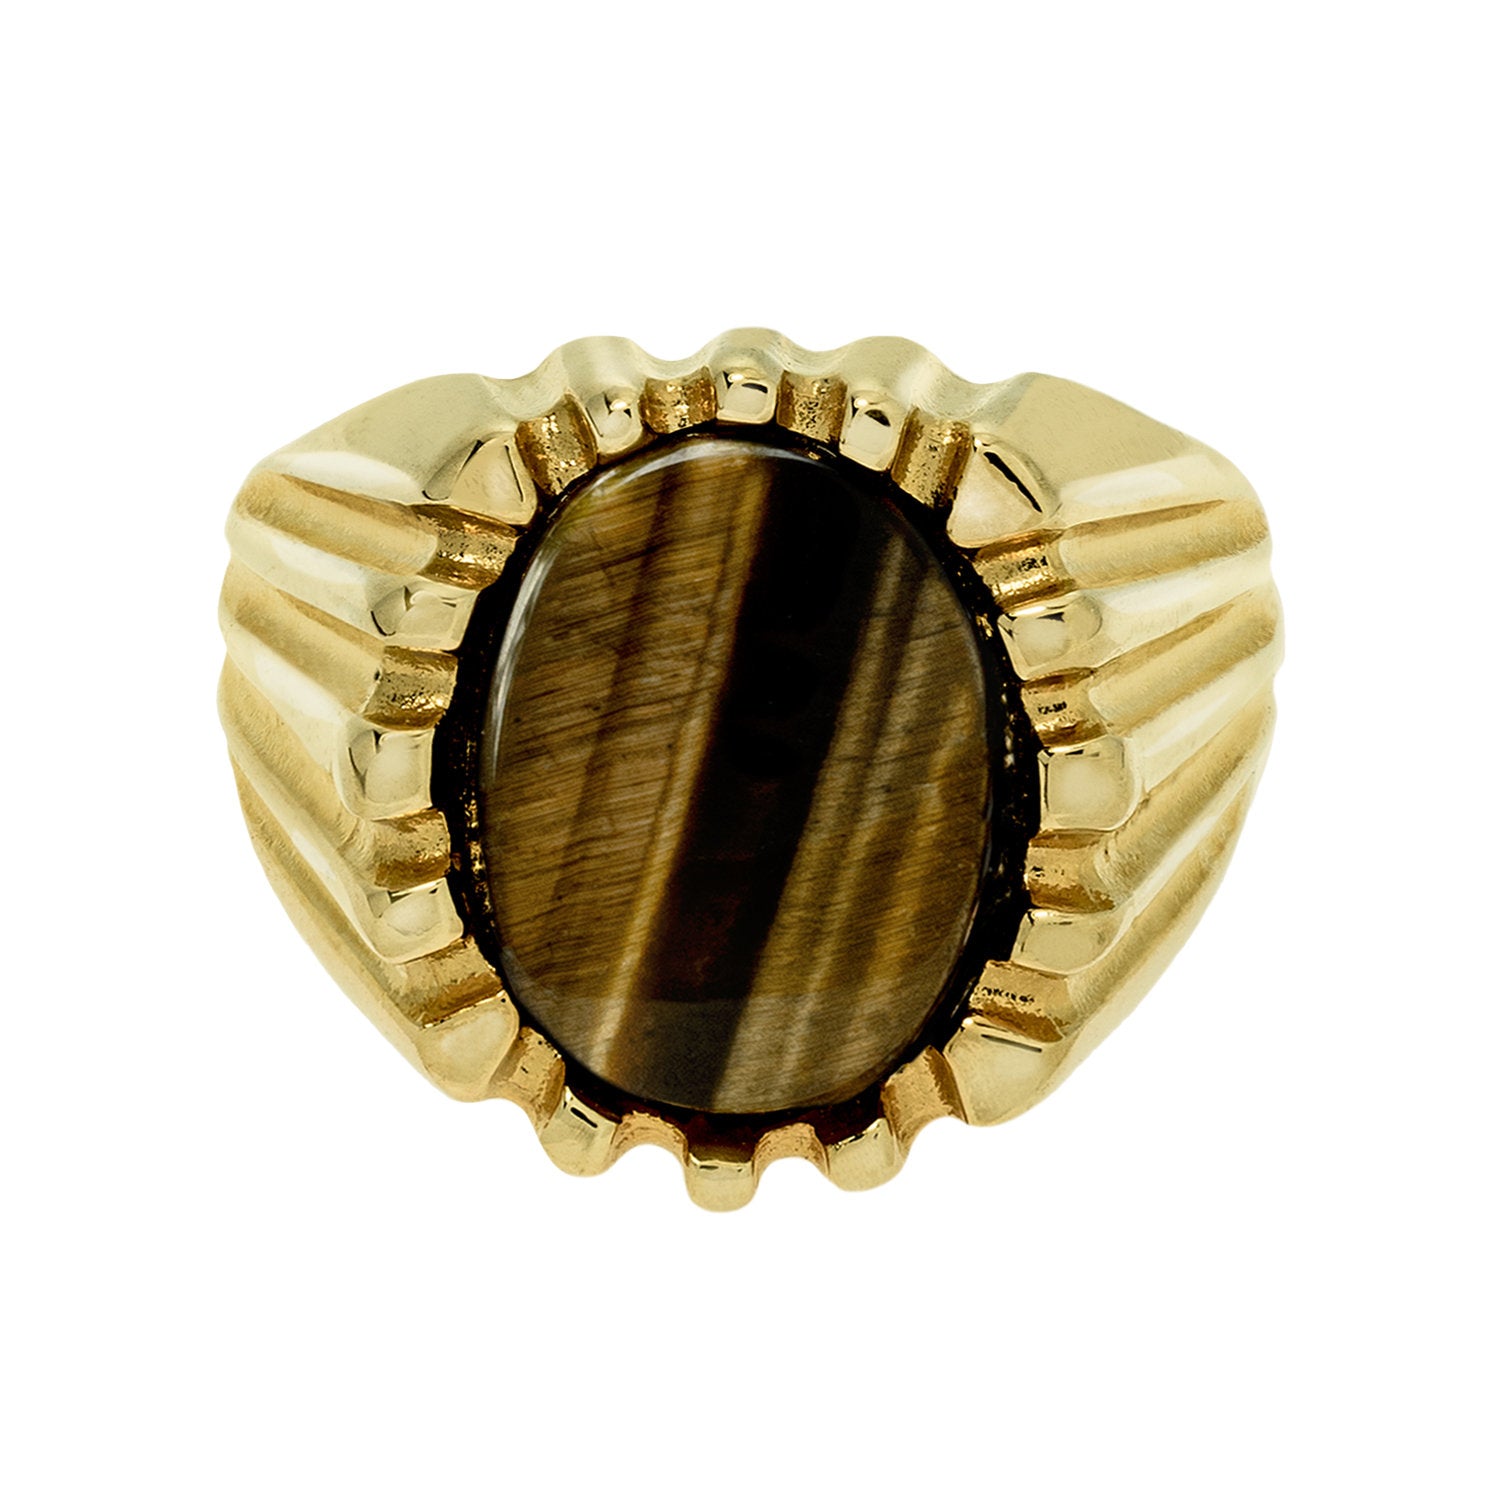 vintage-men's-ring-genuine-tiger-eye-gold-plated